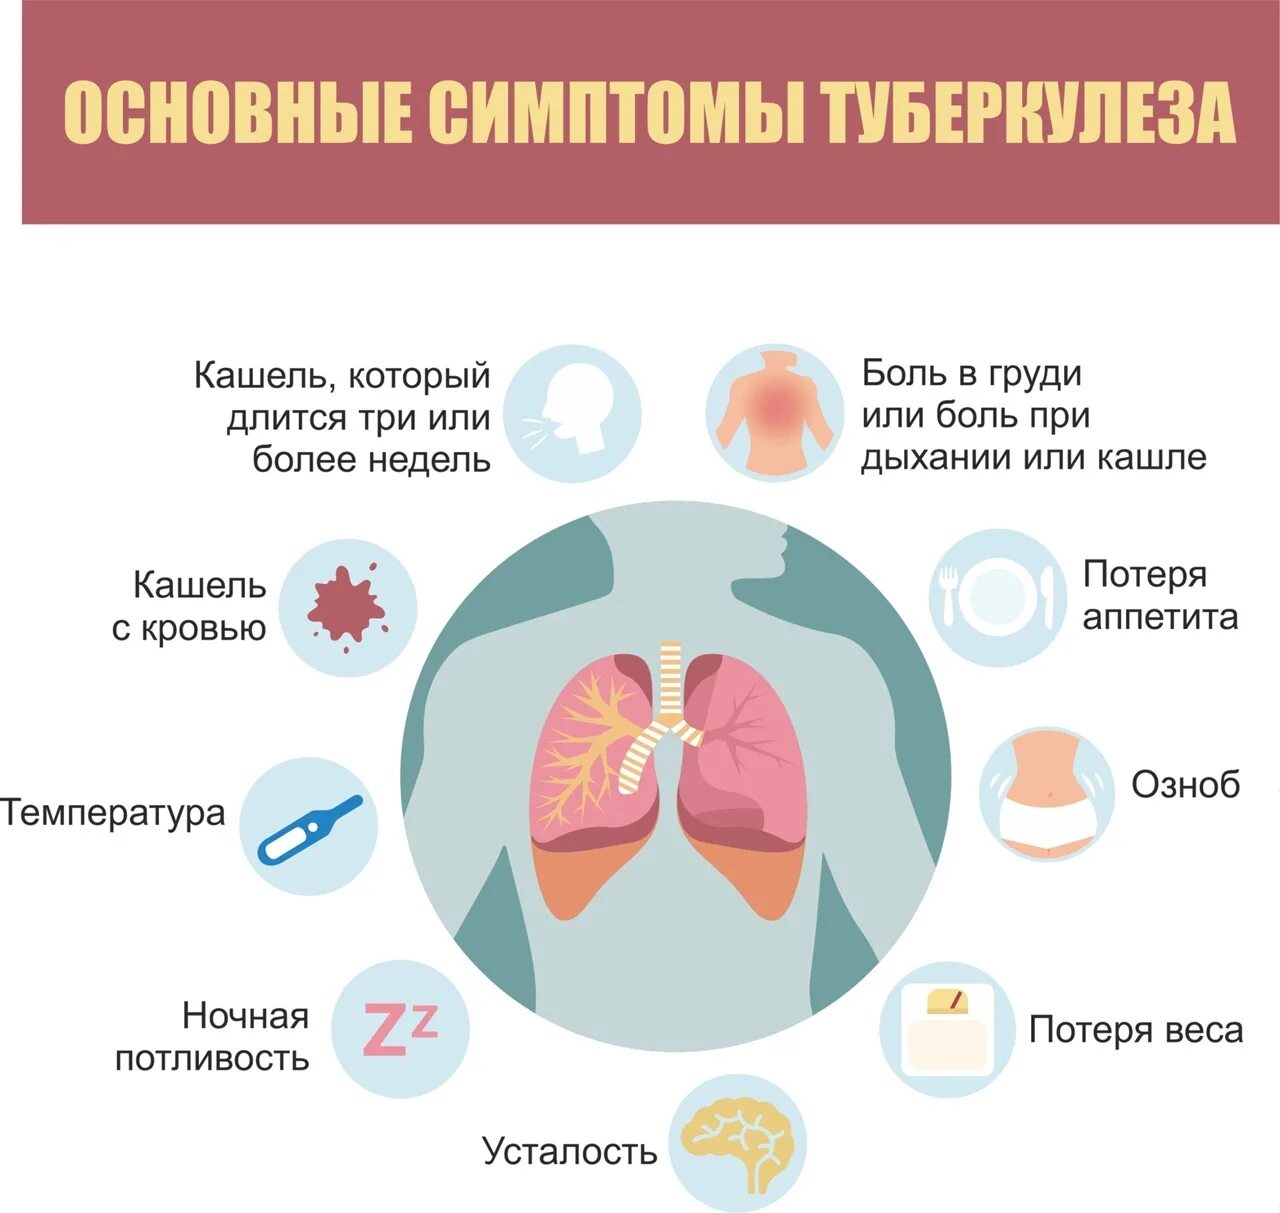 Основные признаки легочного туберкулеза. Первичный туберкулез симптомы. Симптомы проявления туберкулеза. Основные ранние симптомы туберкулеза легких.